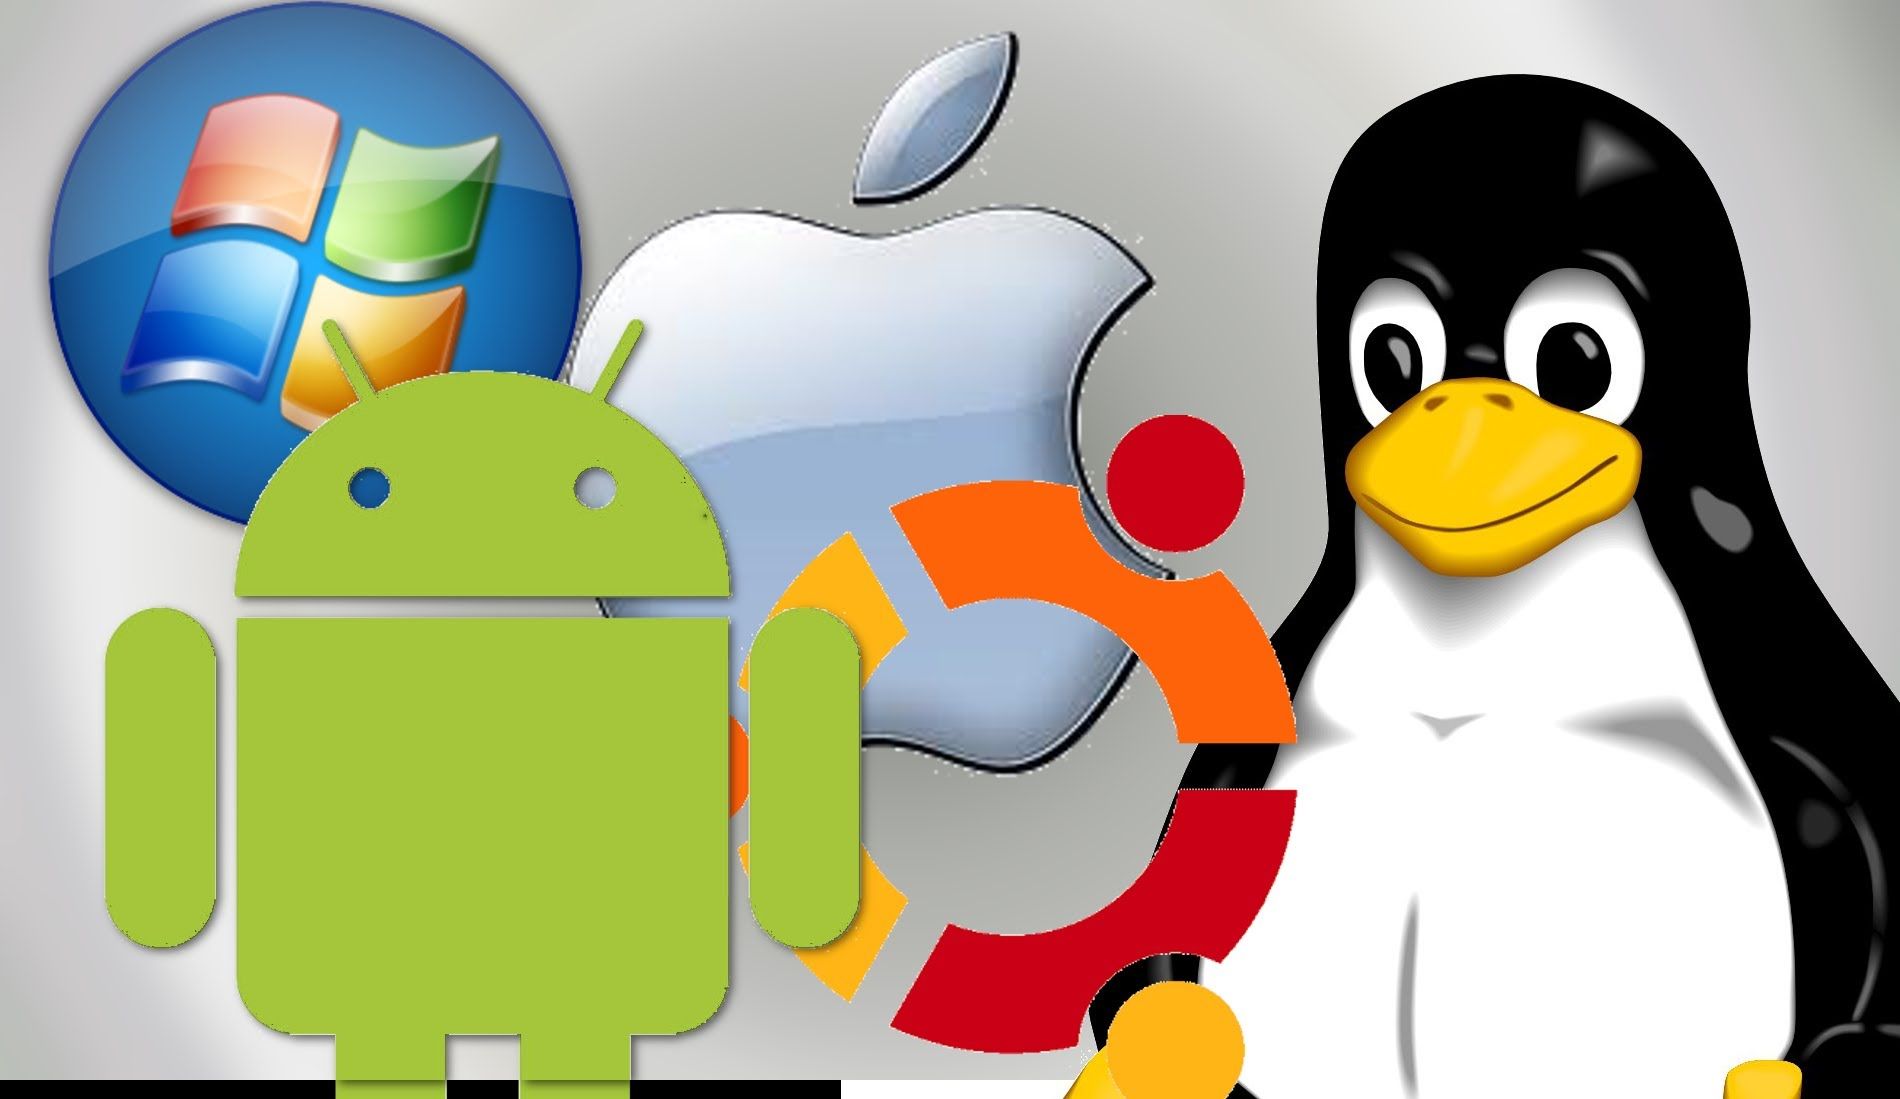 Символ операционной системы. Линукс виндовс Мак. Операционные системы линукс виндовс и Мак. Операционная система Windows Linux Android Macos. Эмблемы операционных систем.